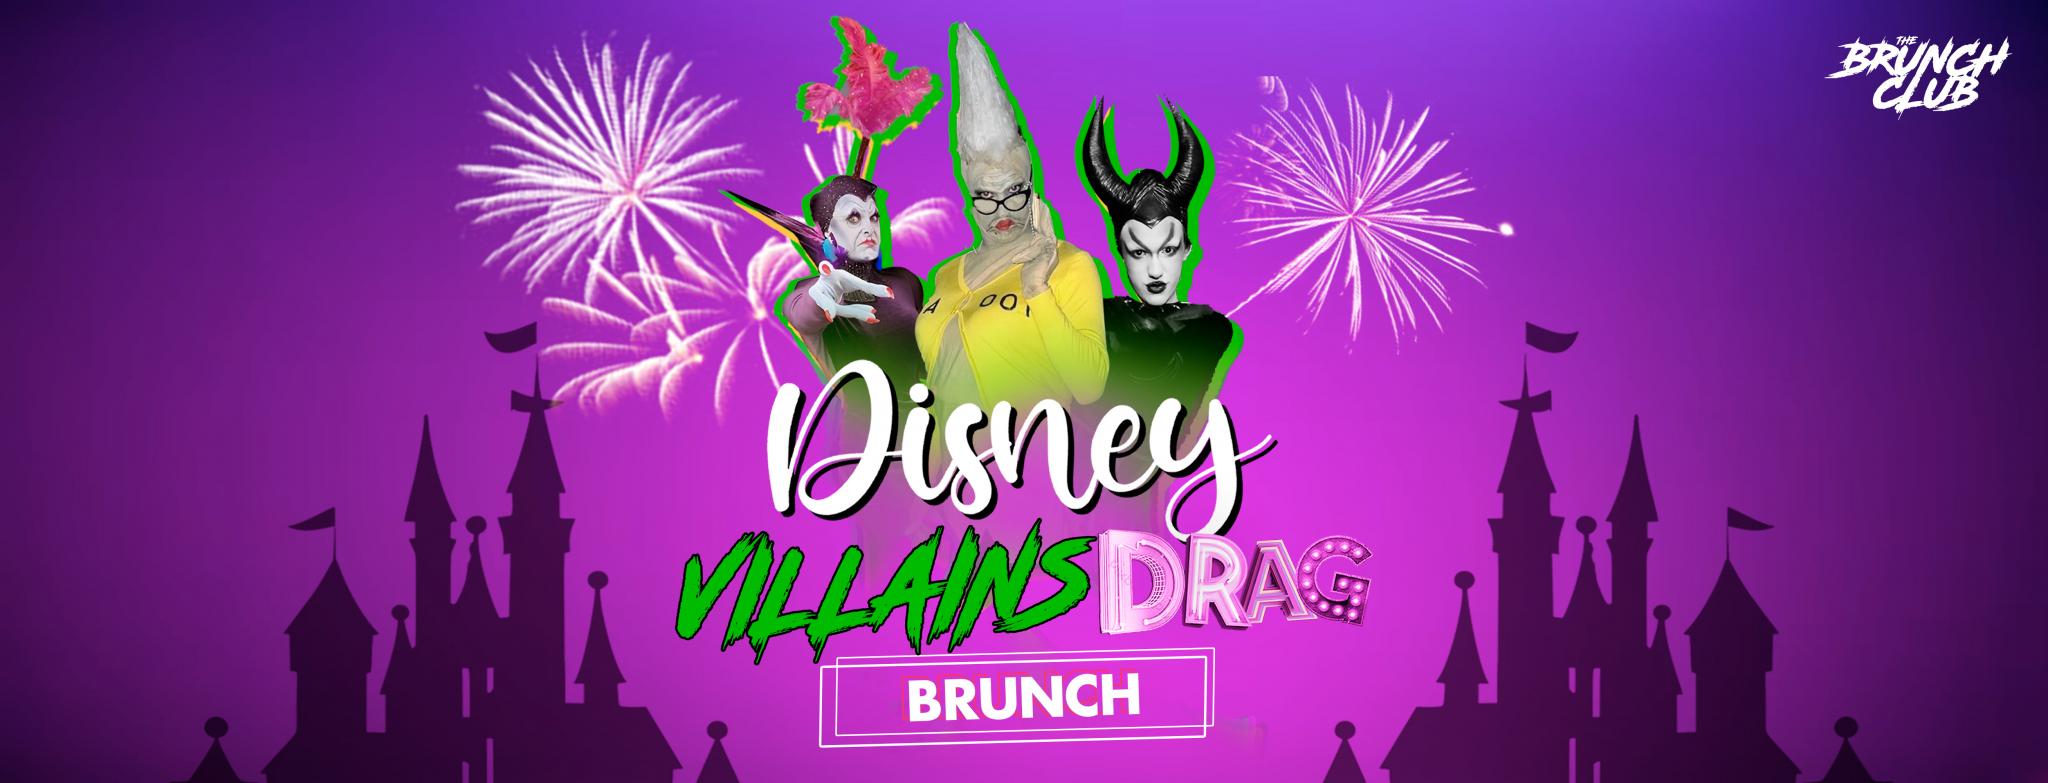 Disney Villains Drag Bottomless Brunch - Manchester